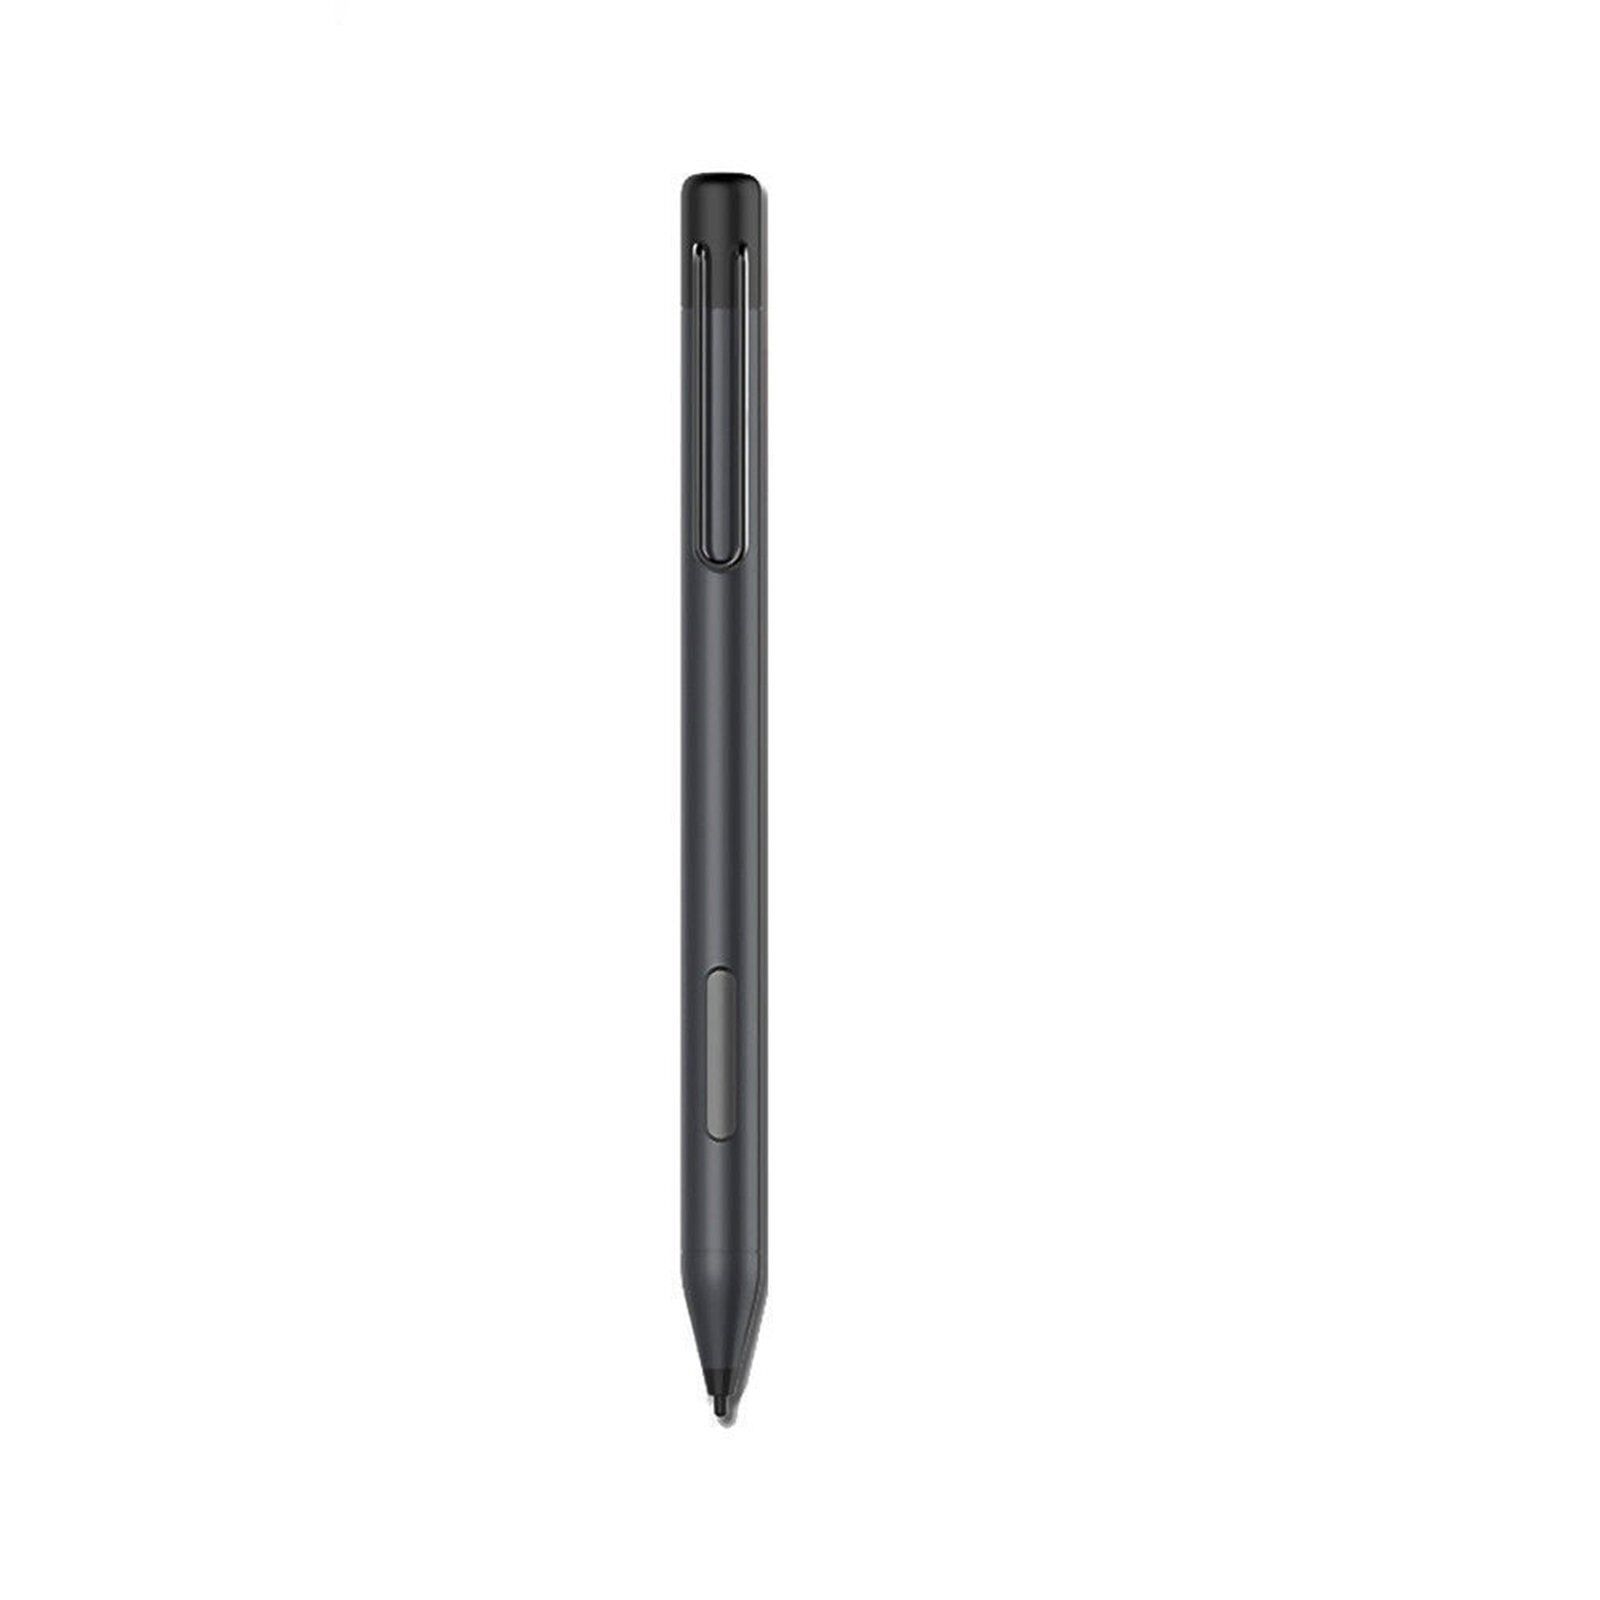 HP Stylus Active Pen for HP Spectre x360/X2 Envy pavilion X360 905512-002 New BD